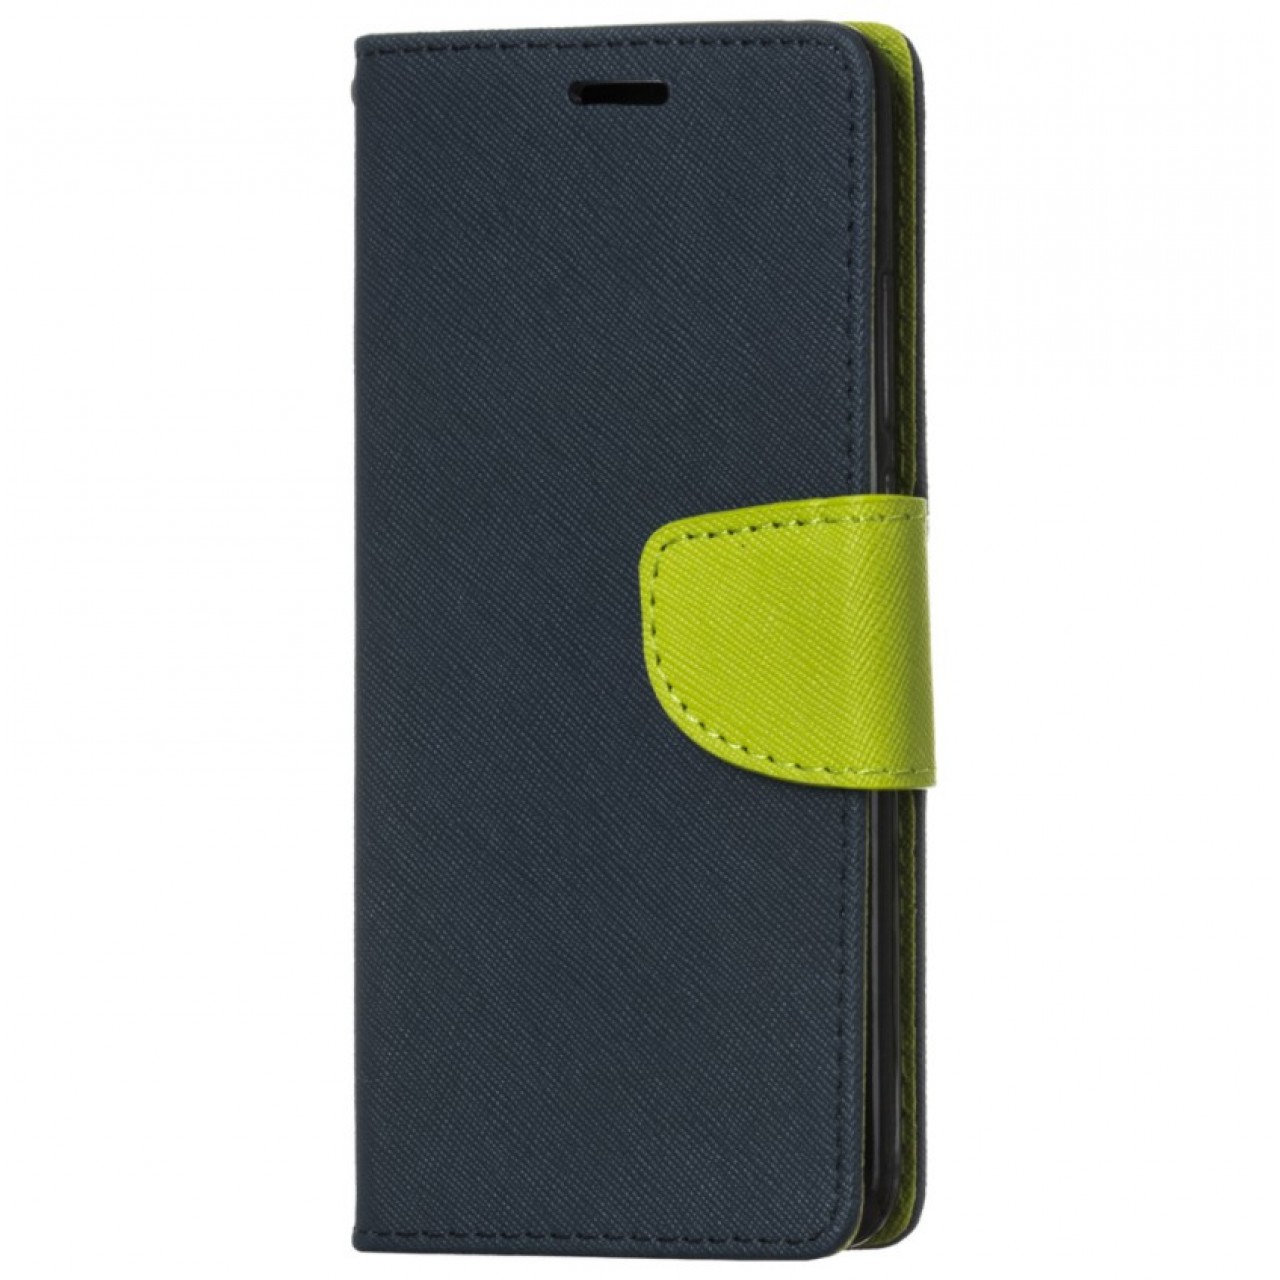 Θήκη Samsung Galaxy J7 2017 ( J730F ) PU Leather Πορτοφόλι flip Fancy Diary - 3686 - Σκούρο Μπλέ - OEM